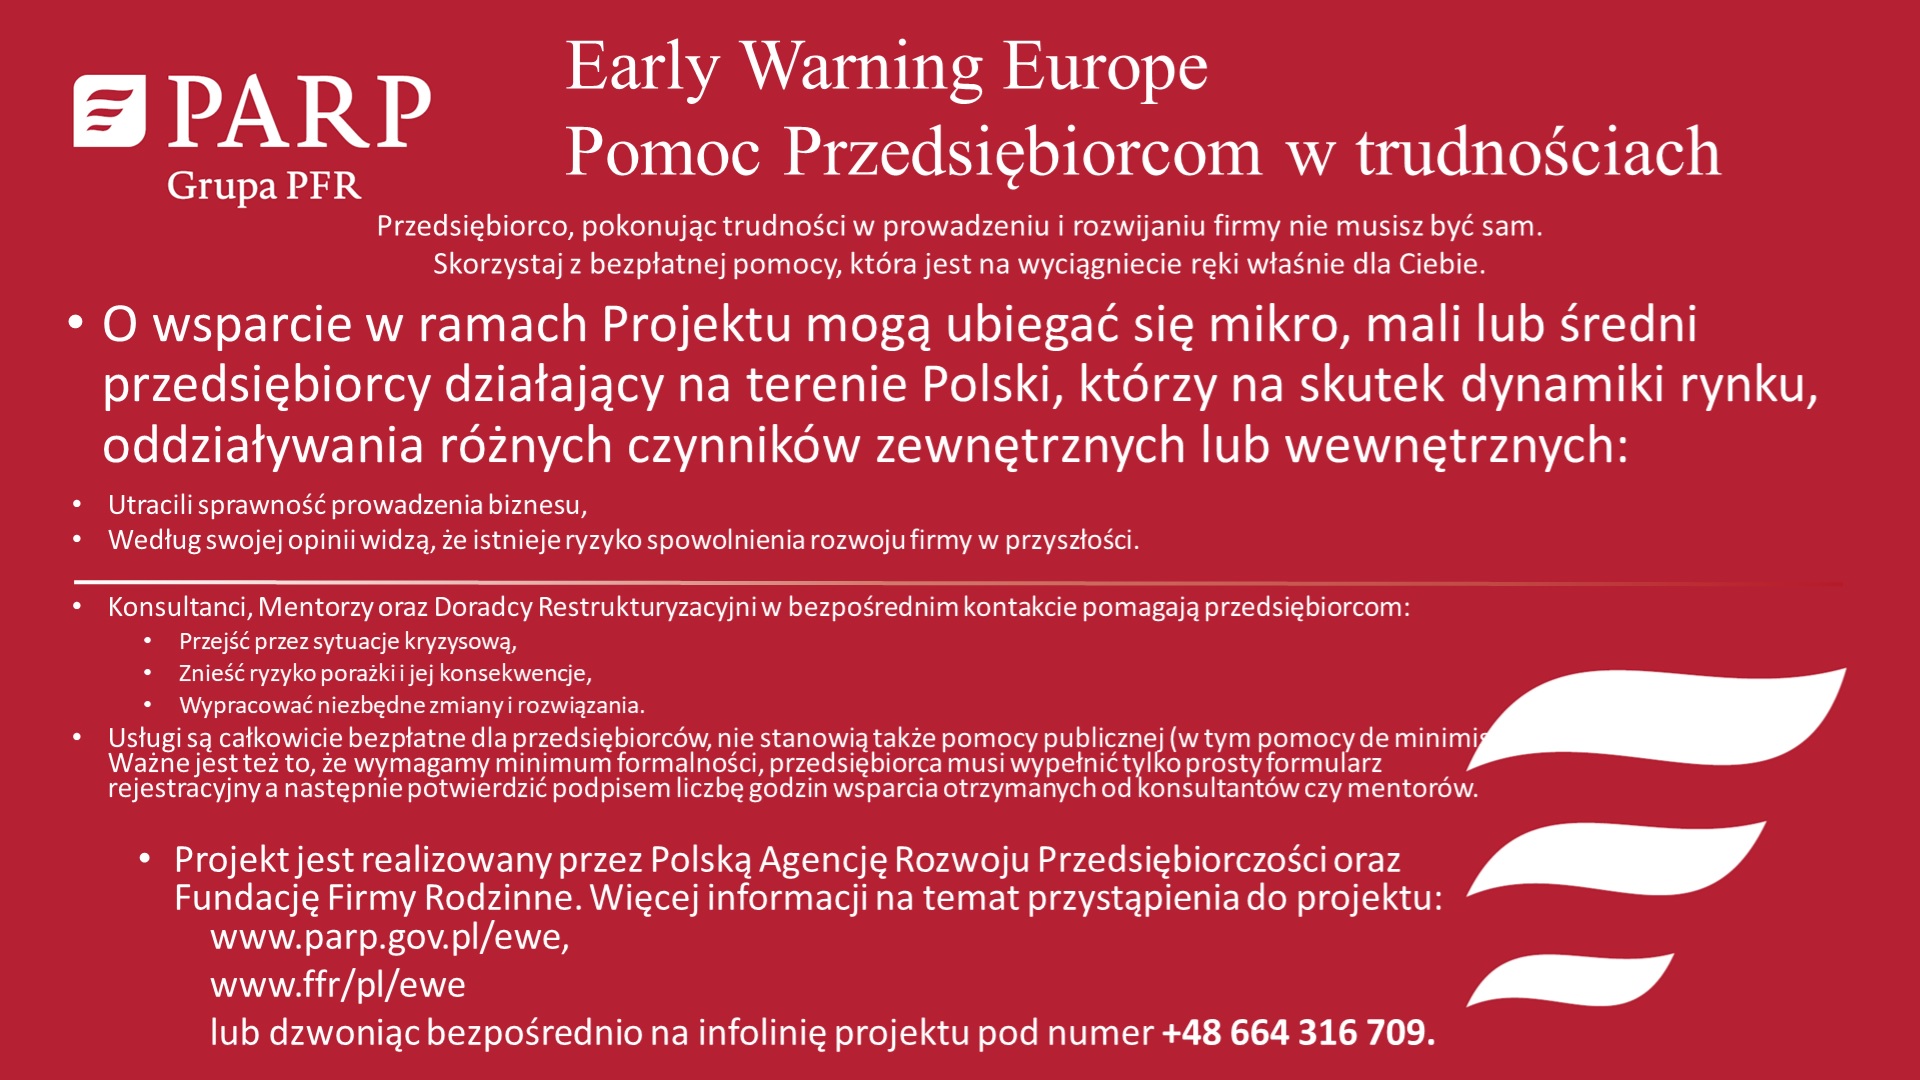 Polska Agecja Rozwoju Przedsiębiorczości